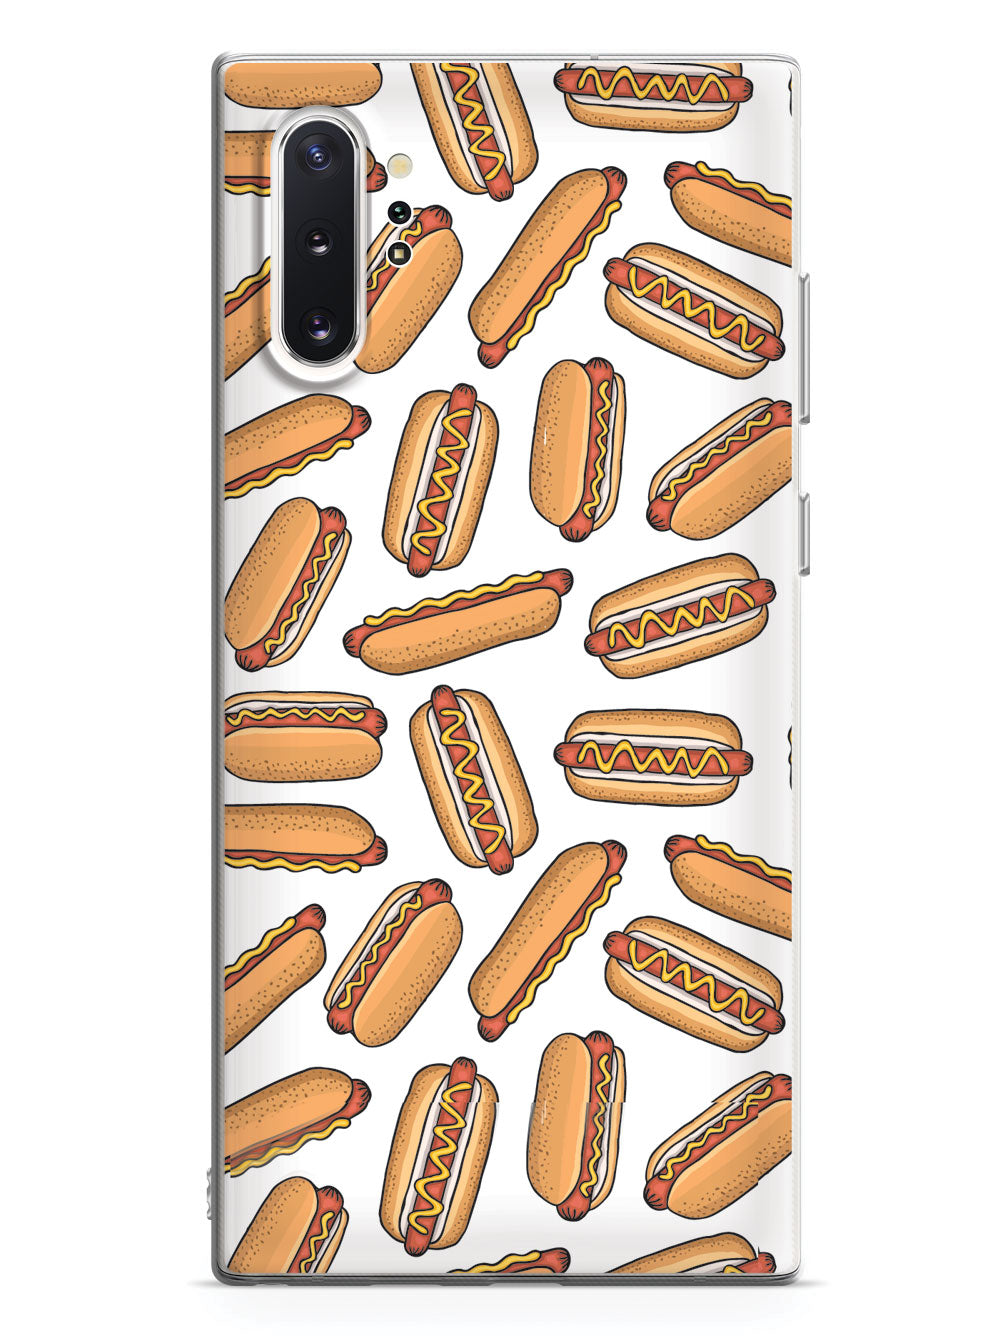 Hot Dog Pattern Case